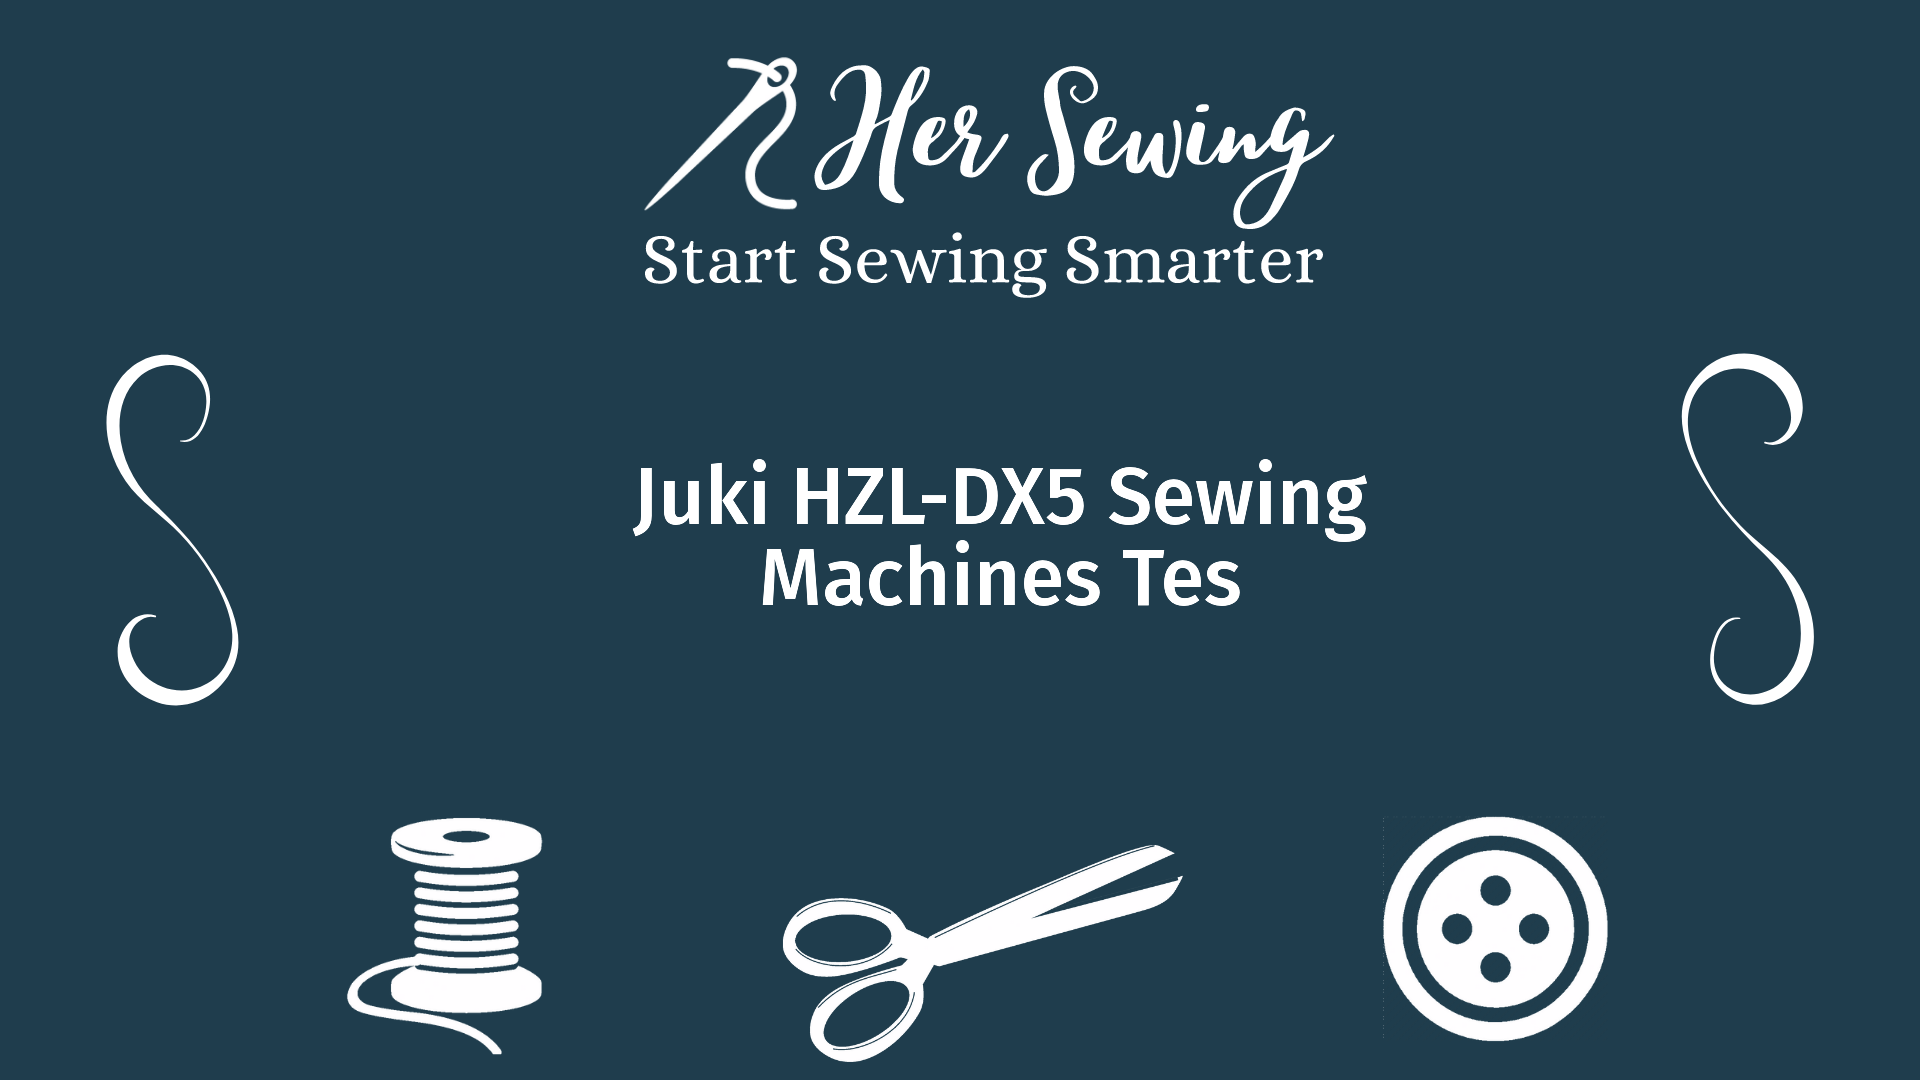 Juki HZL-DX5 Sewing Machines Tes